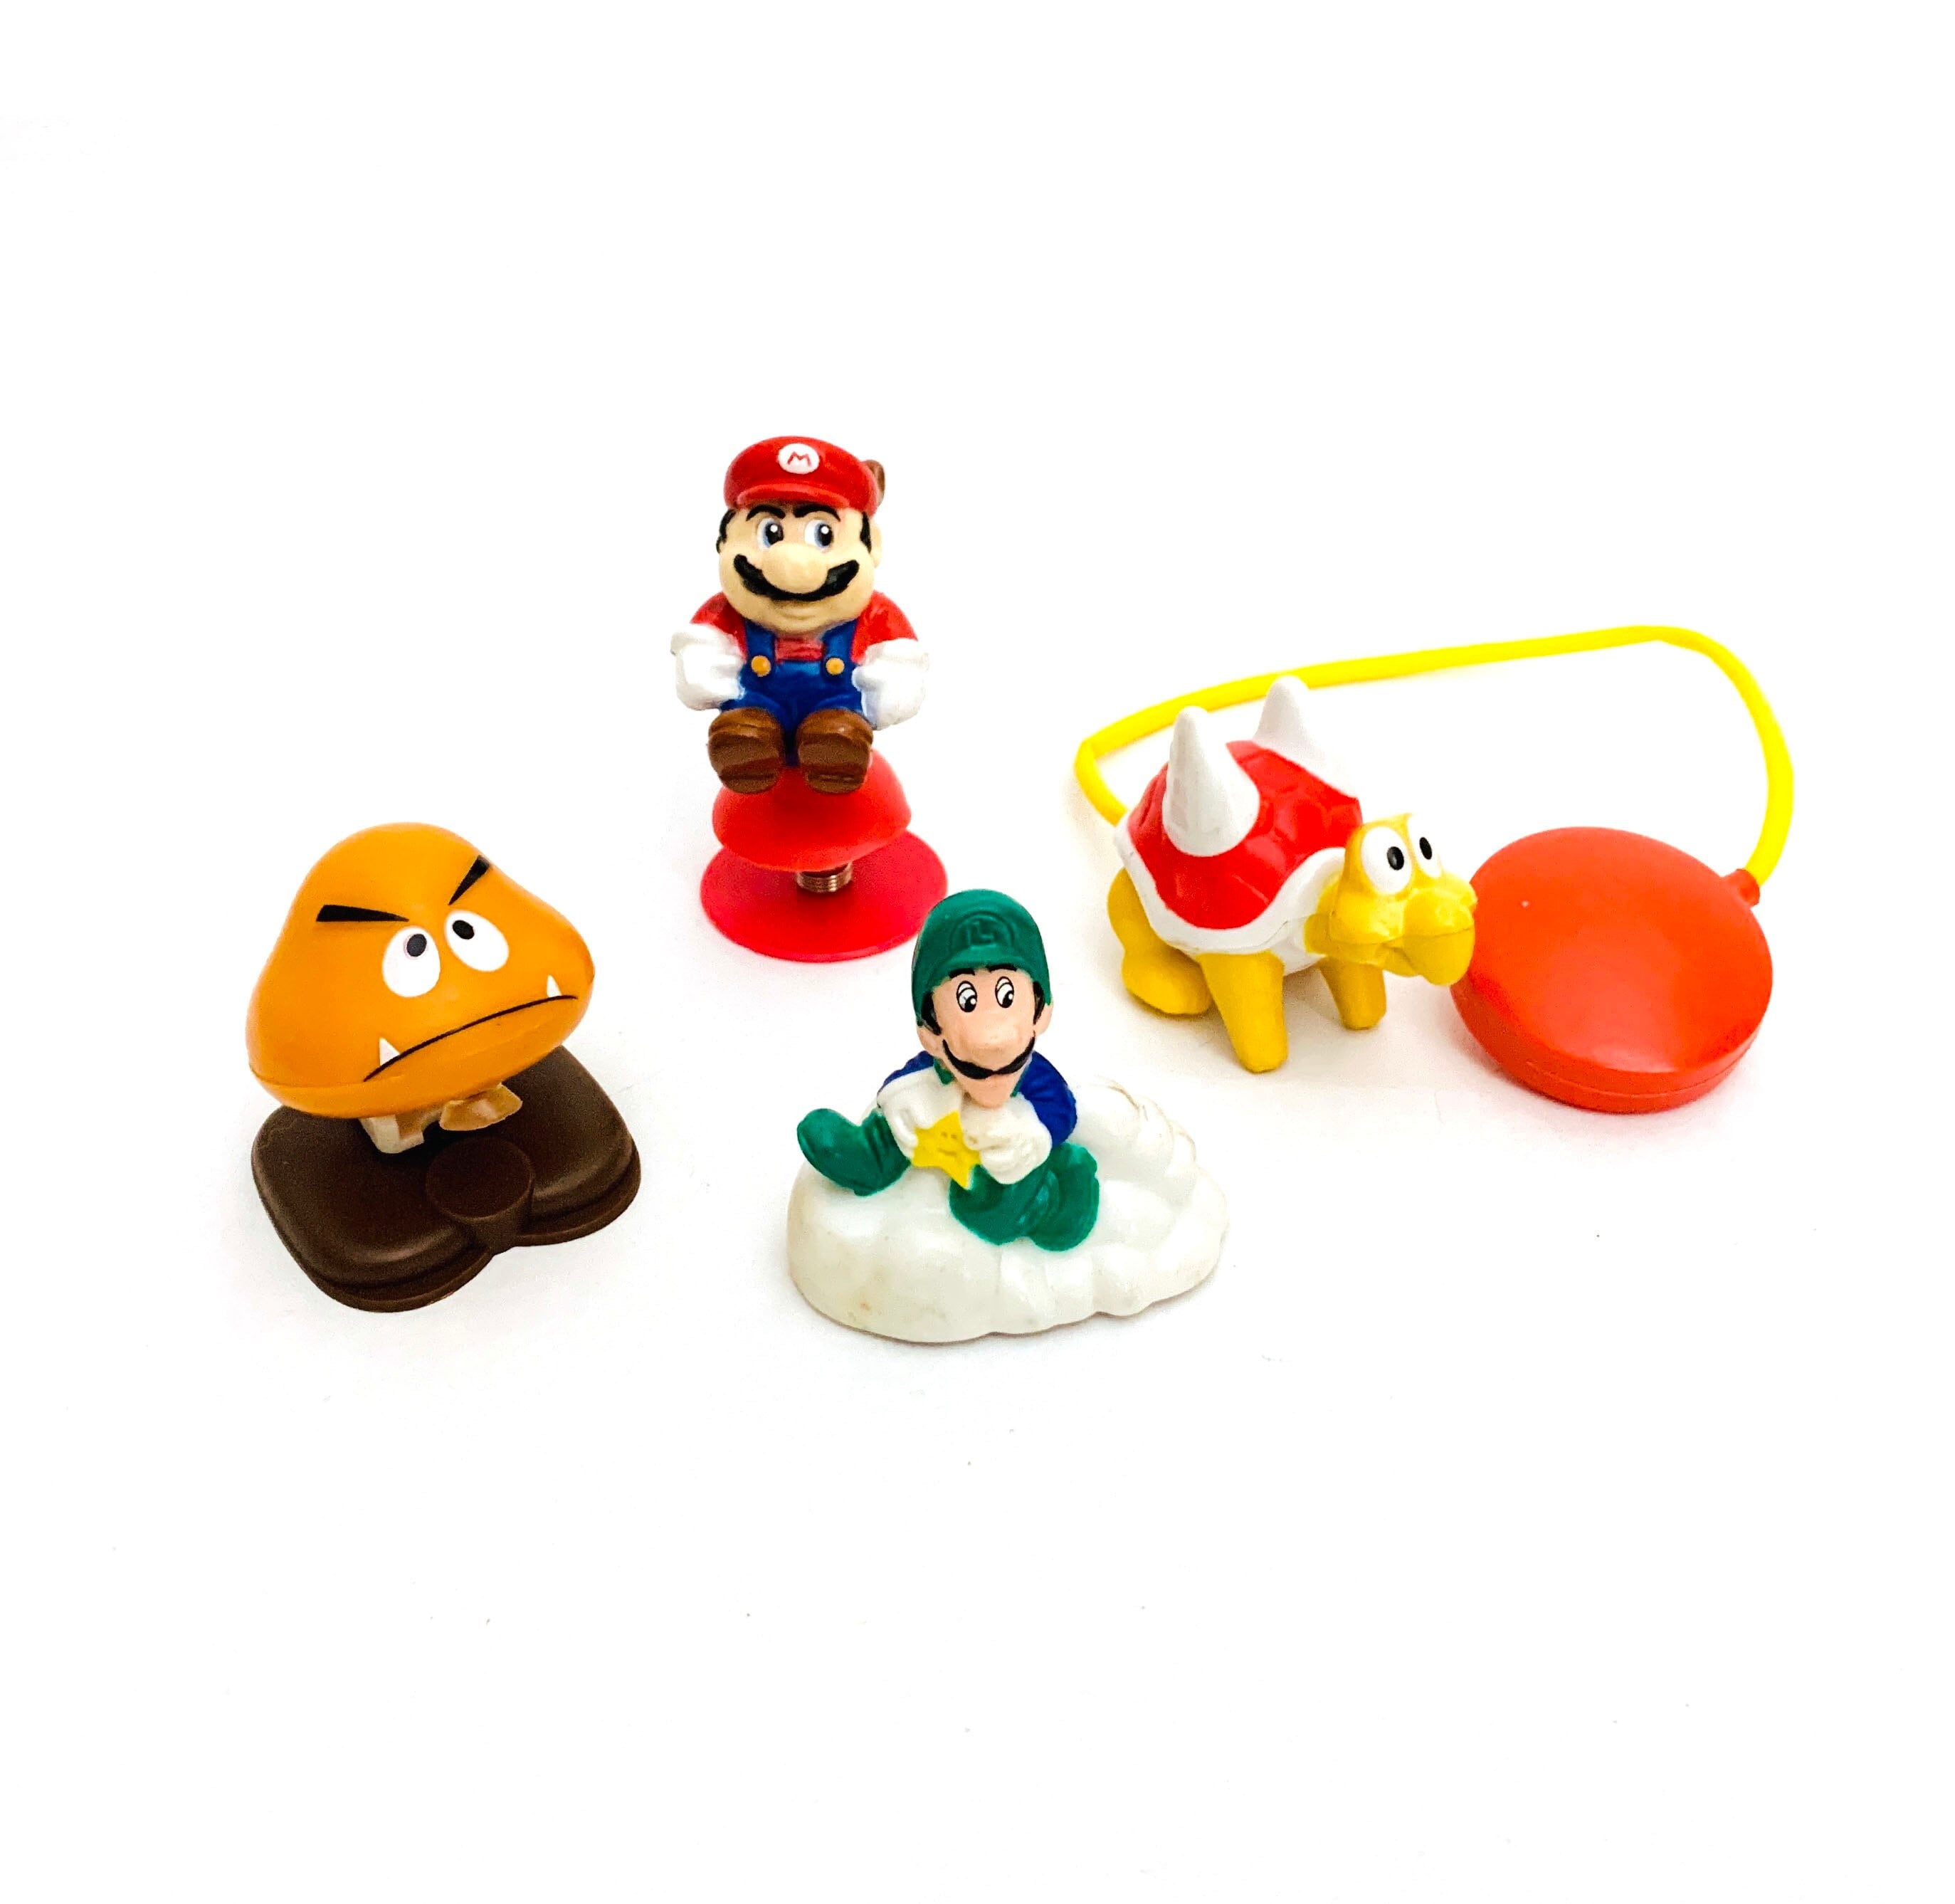 Vintage Nintendo Mario Bros Super Mario 3 Spielzeug Mcdonalds Happy Meal  1989 - .de